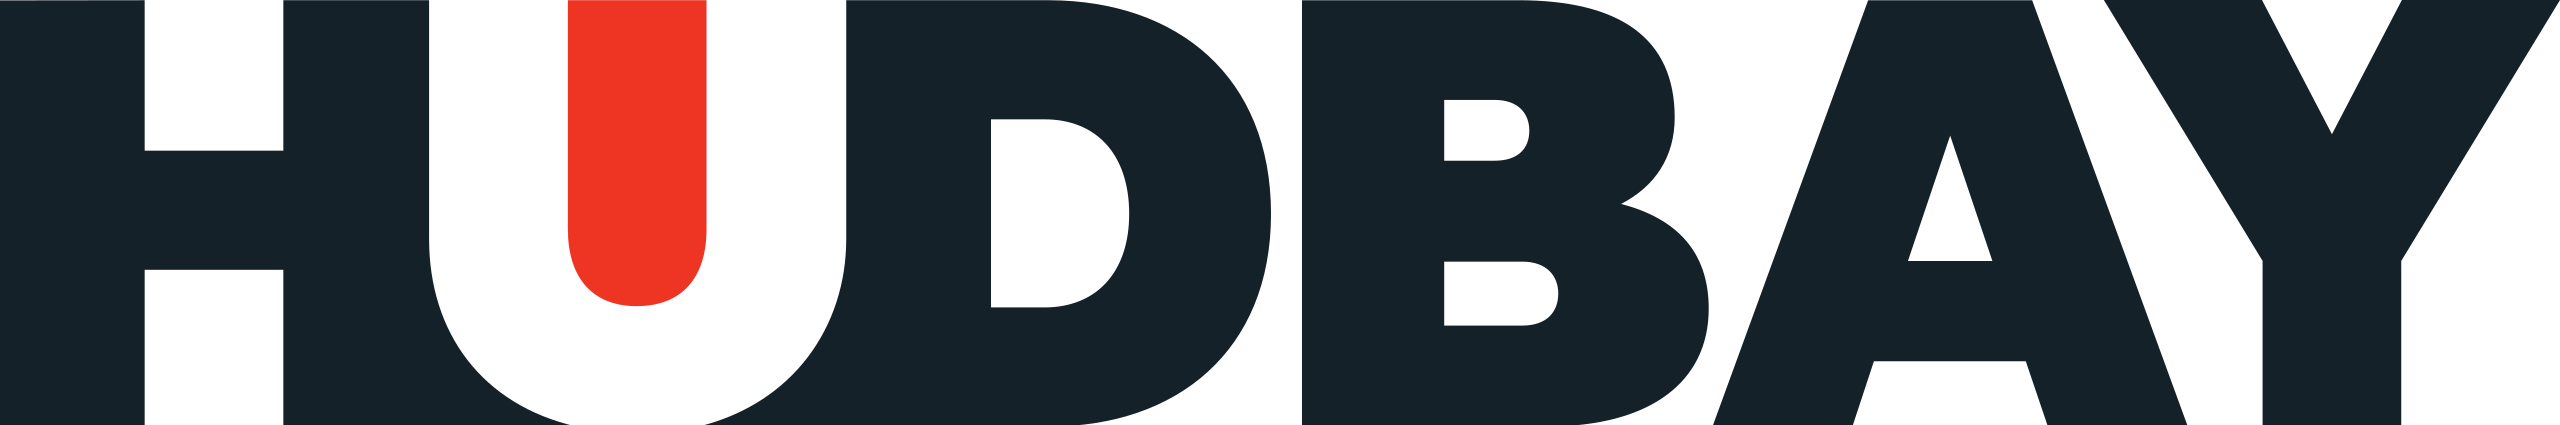 hudbay logo